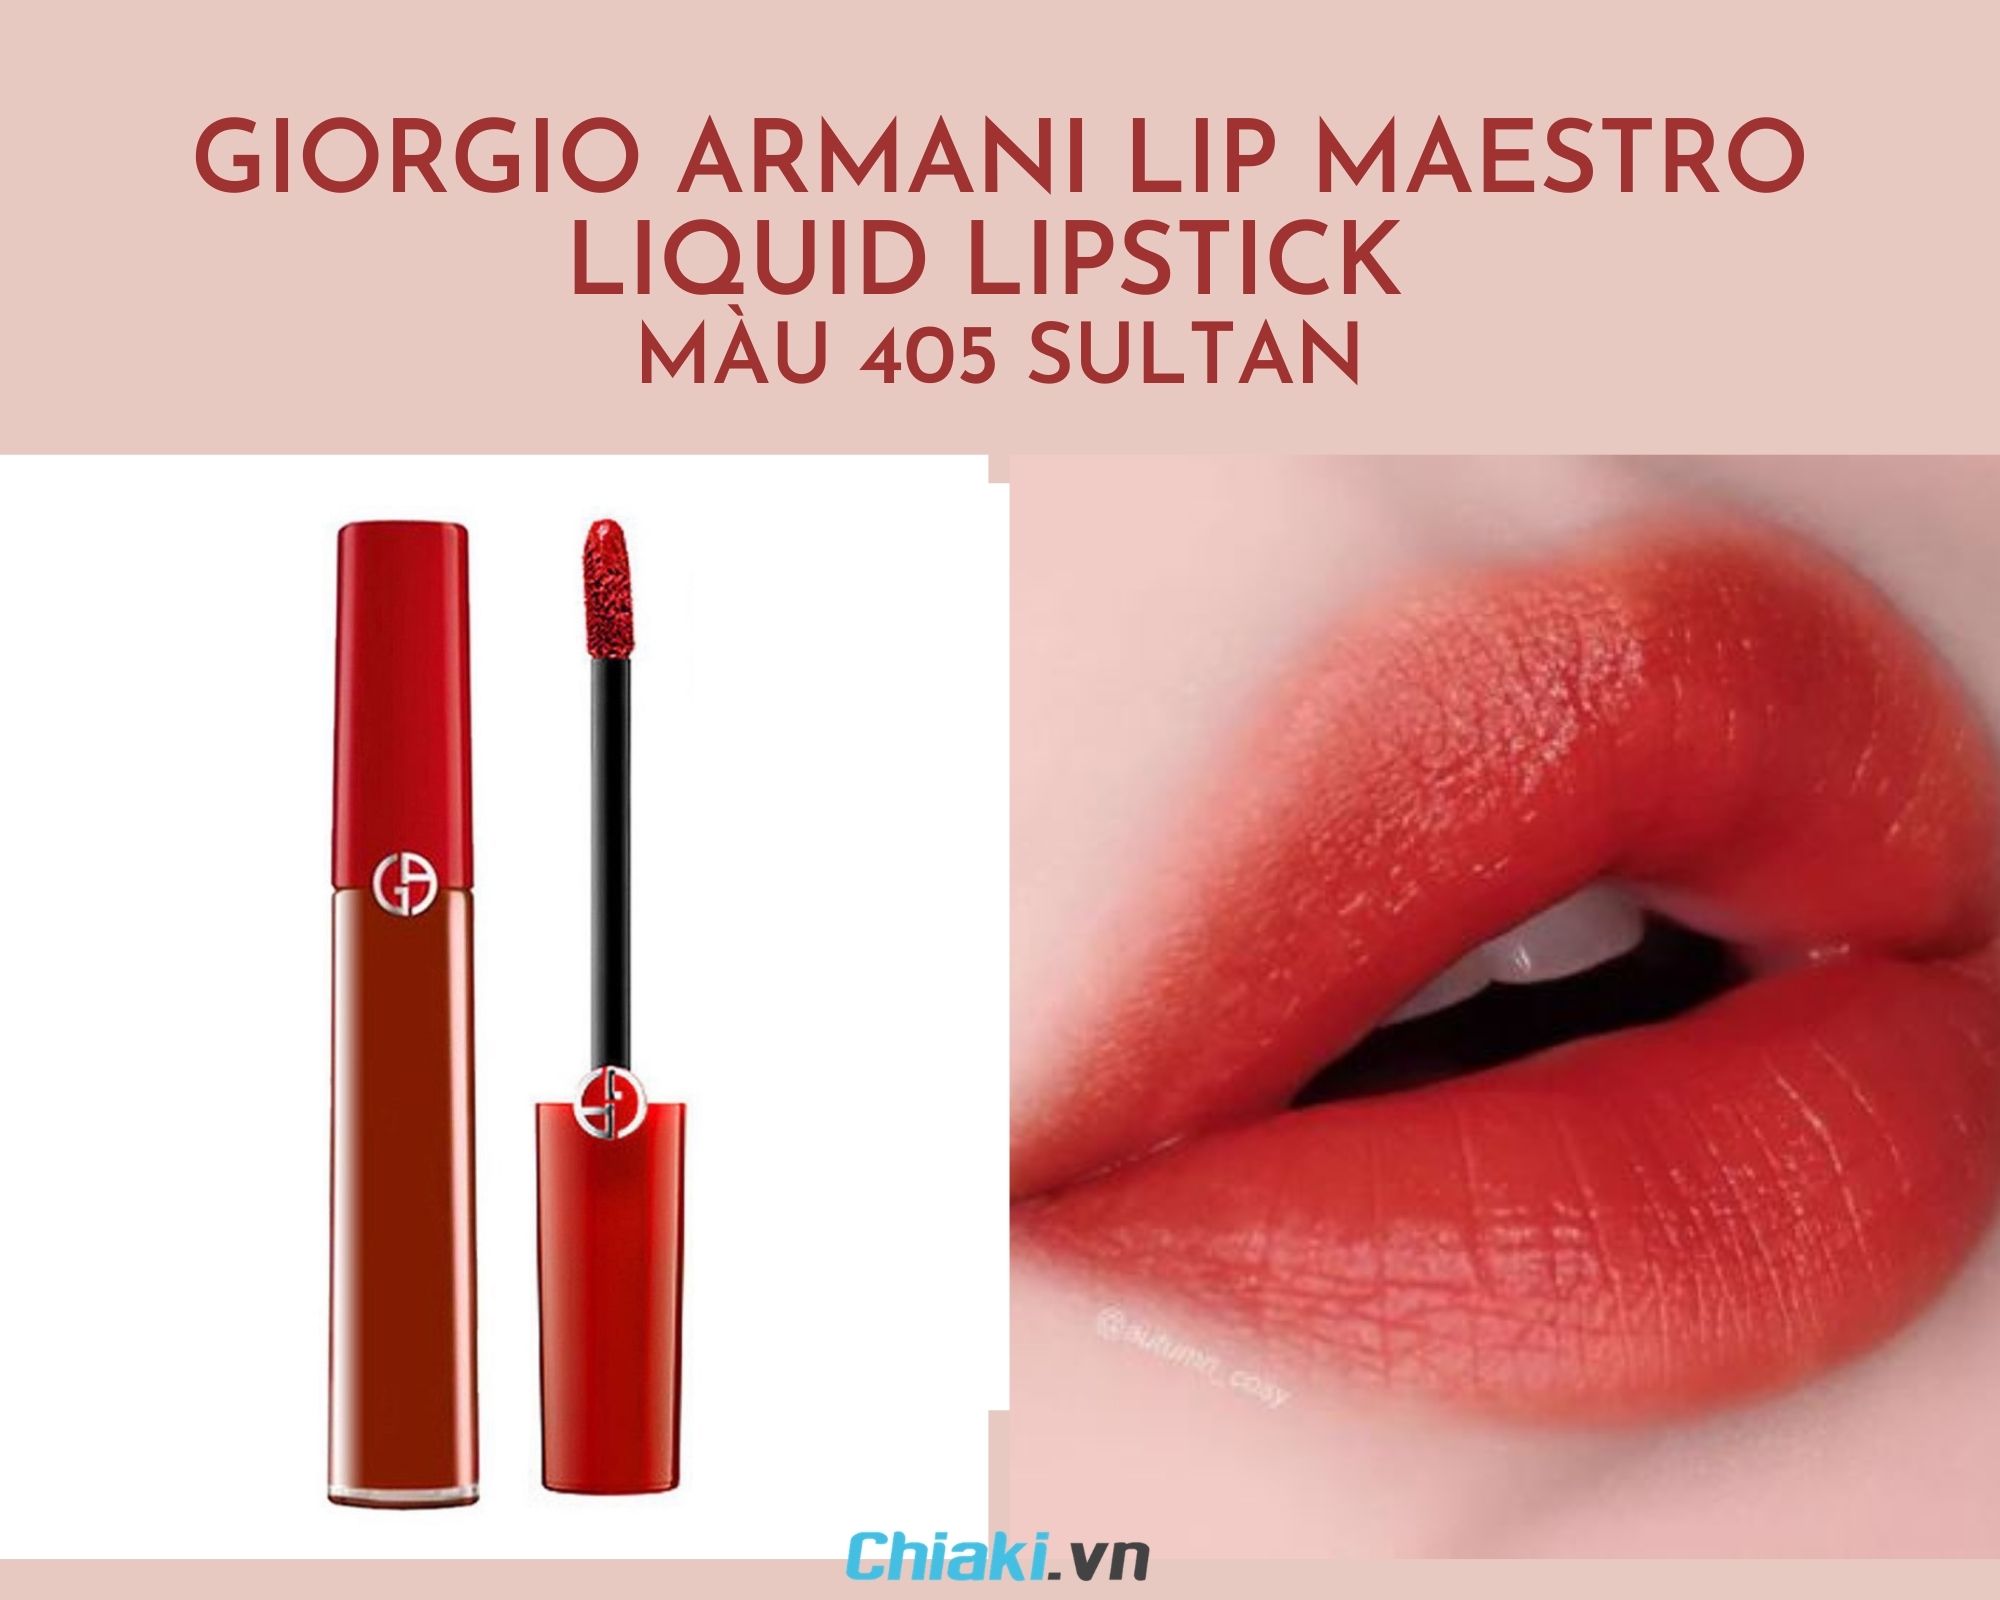 Giorgio Armani Lip Maestro Liquid Lipstick - màu 405